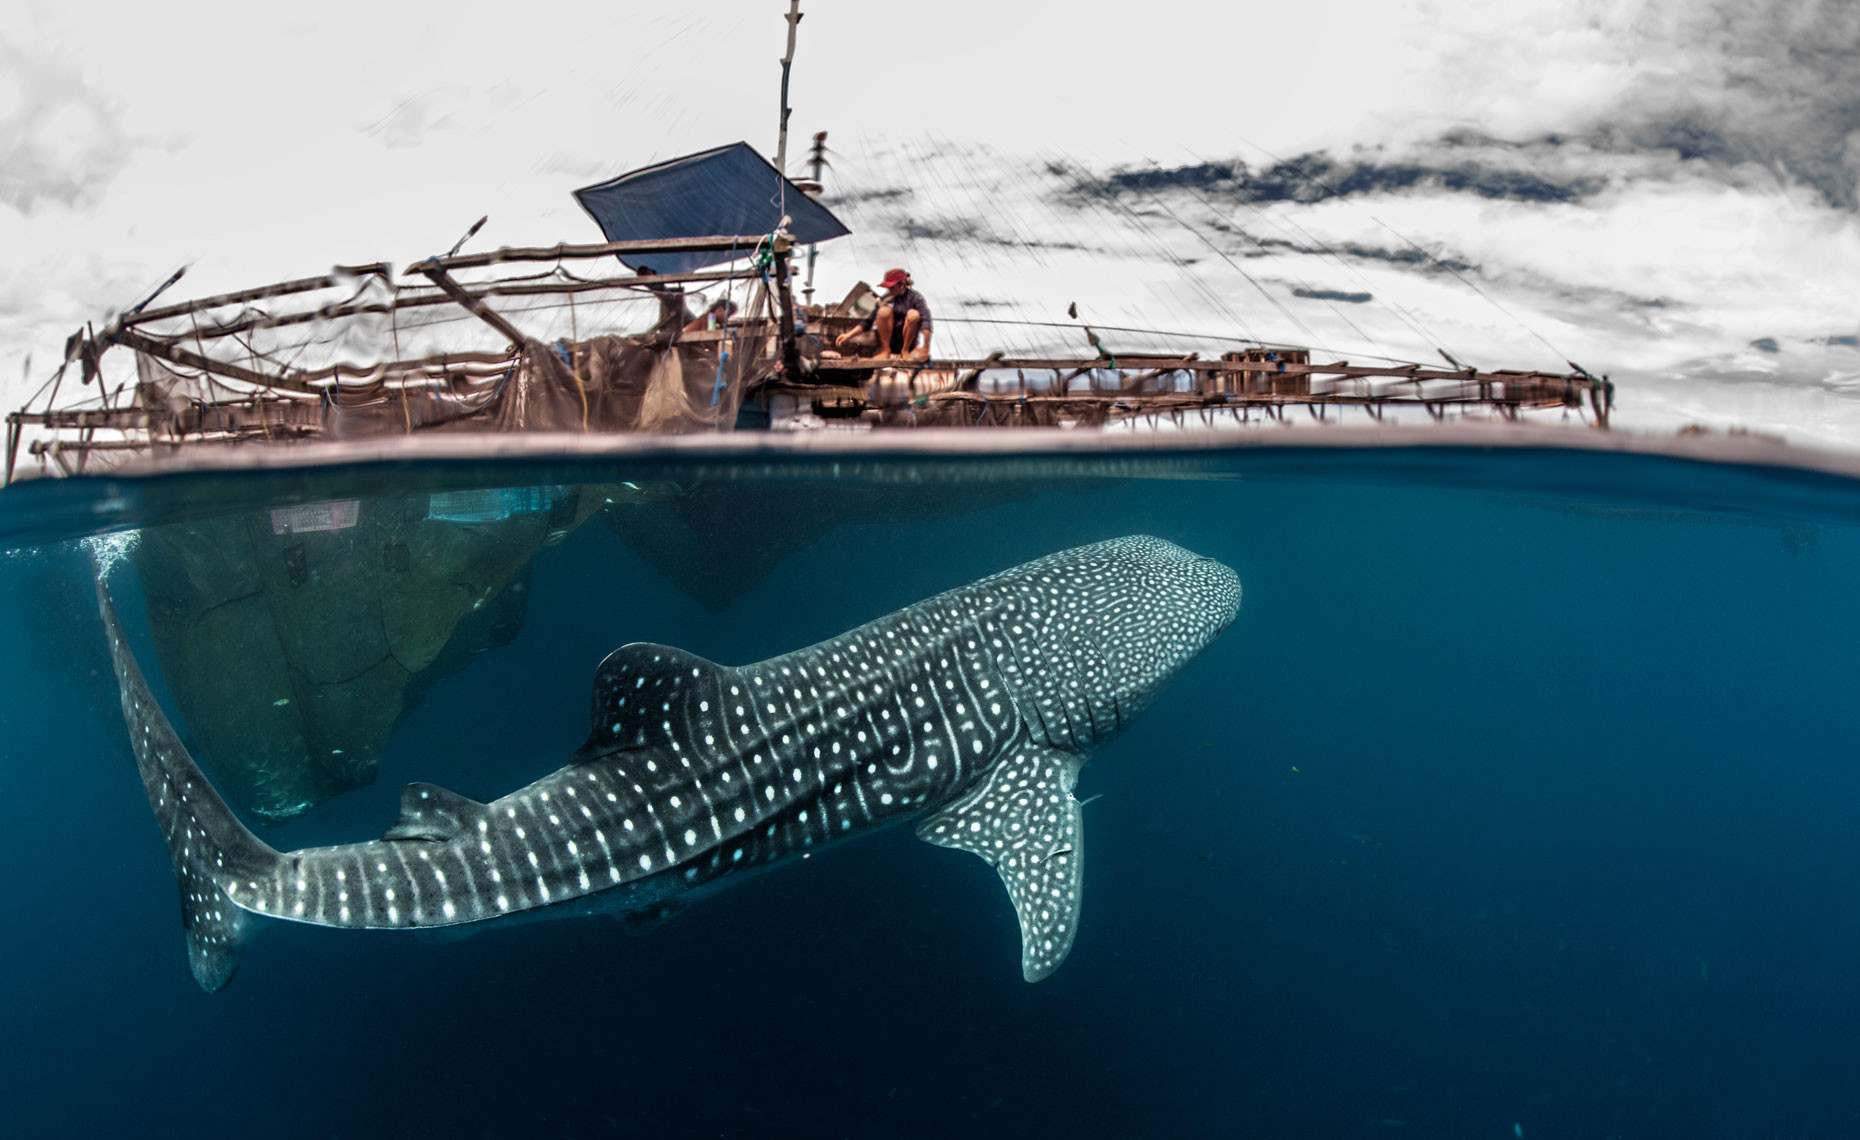 фото китовой акулы самой большой